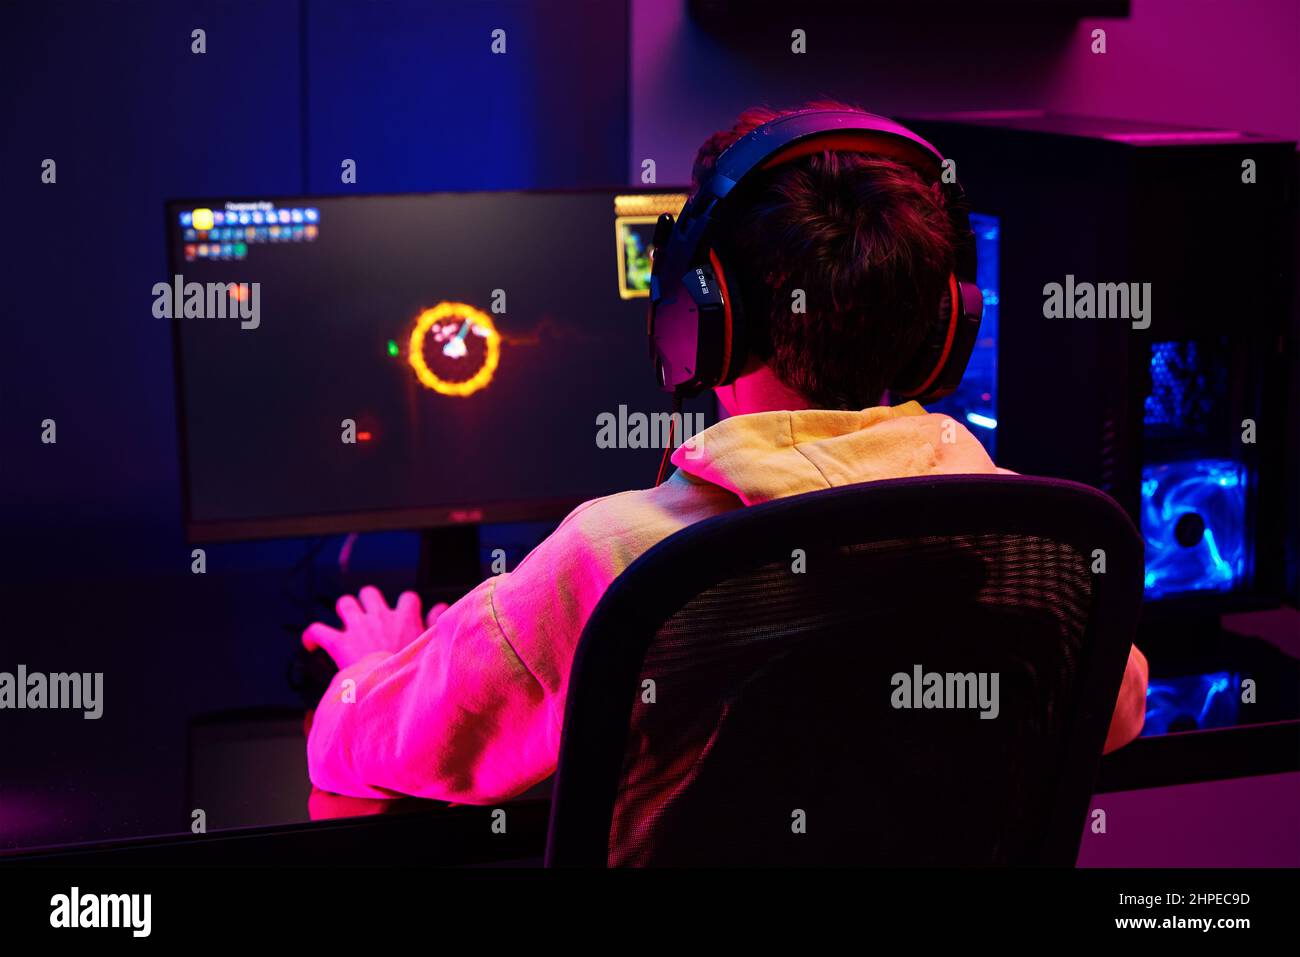 Teenager Junge spielen Computer-Videospiel im dunklen Raum, verwenden neonfarbene rgb mechanische Tastatur, Ort für Cybersport-Gaming Stockfoto